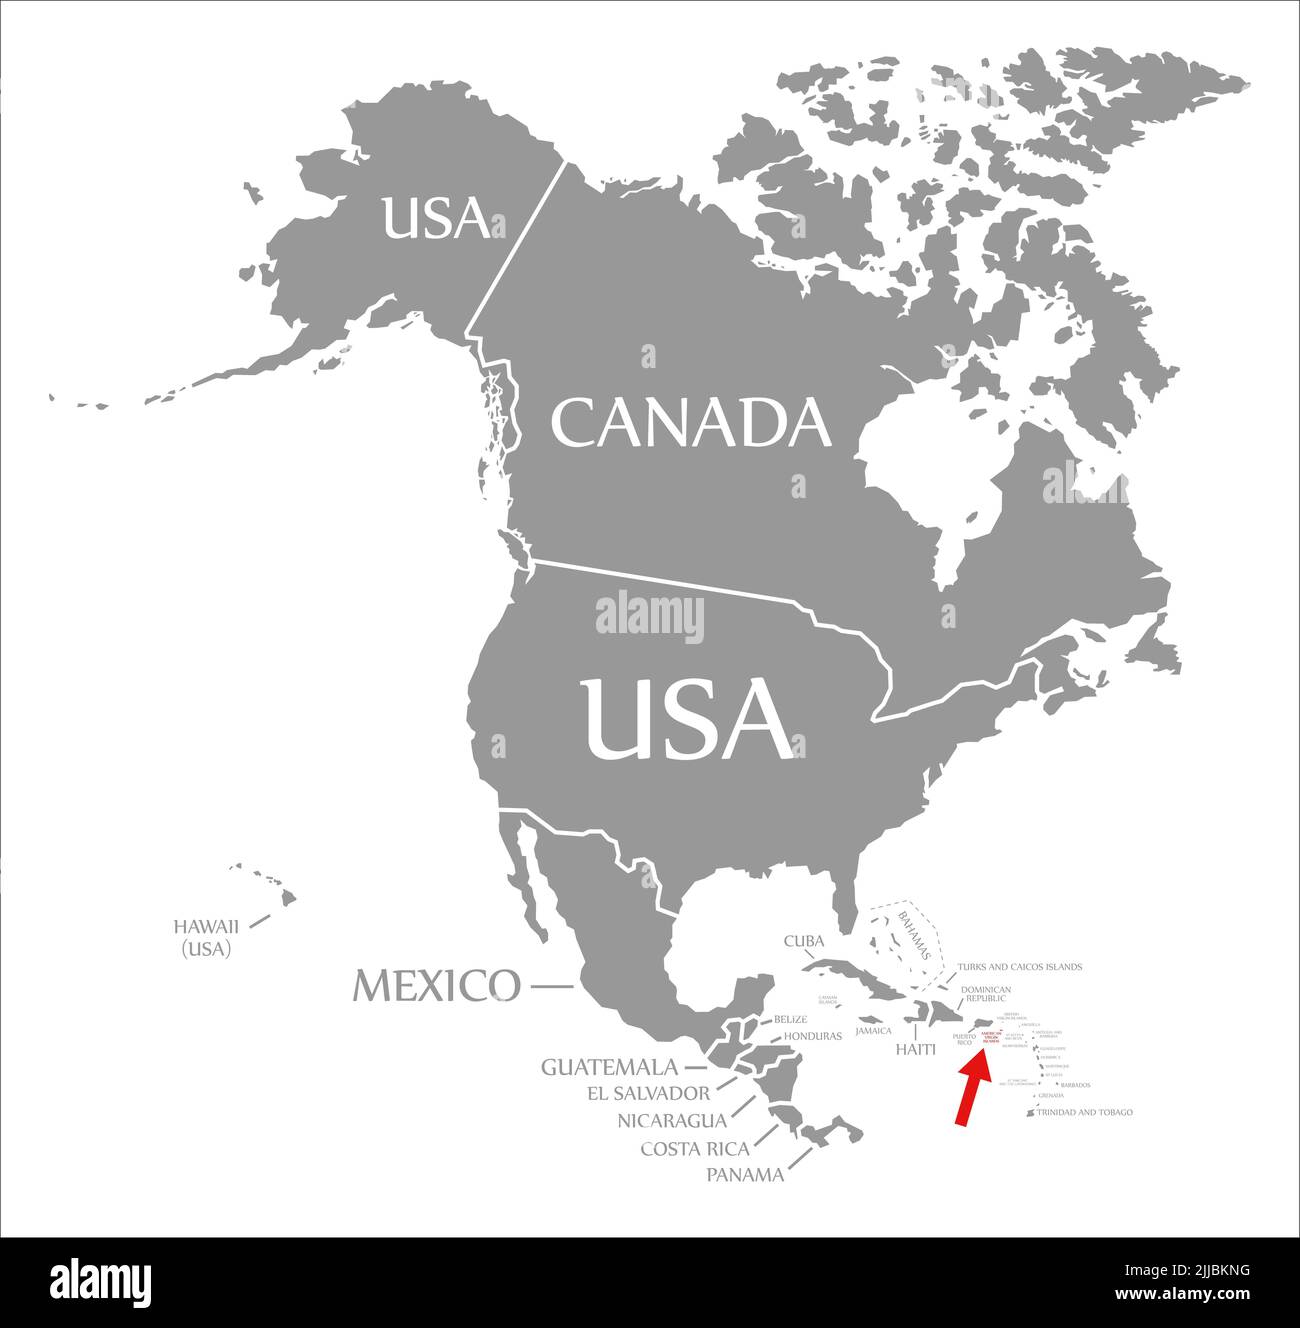 Islas Vírgenes Americanas resaltadas en rojo en el mapa de América del Norte Foto de stock